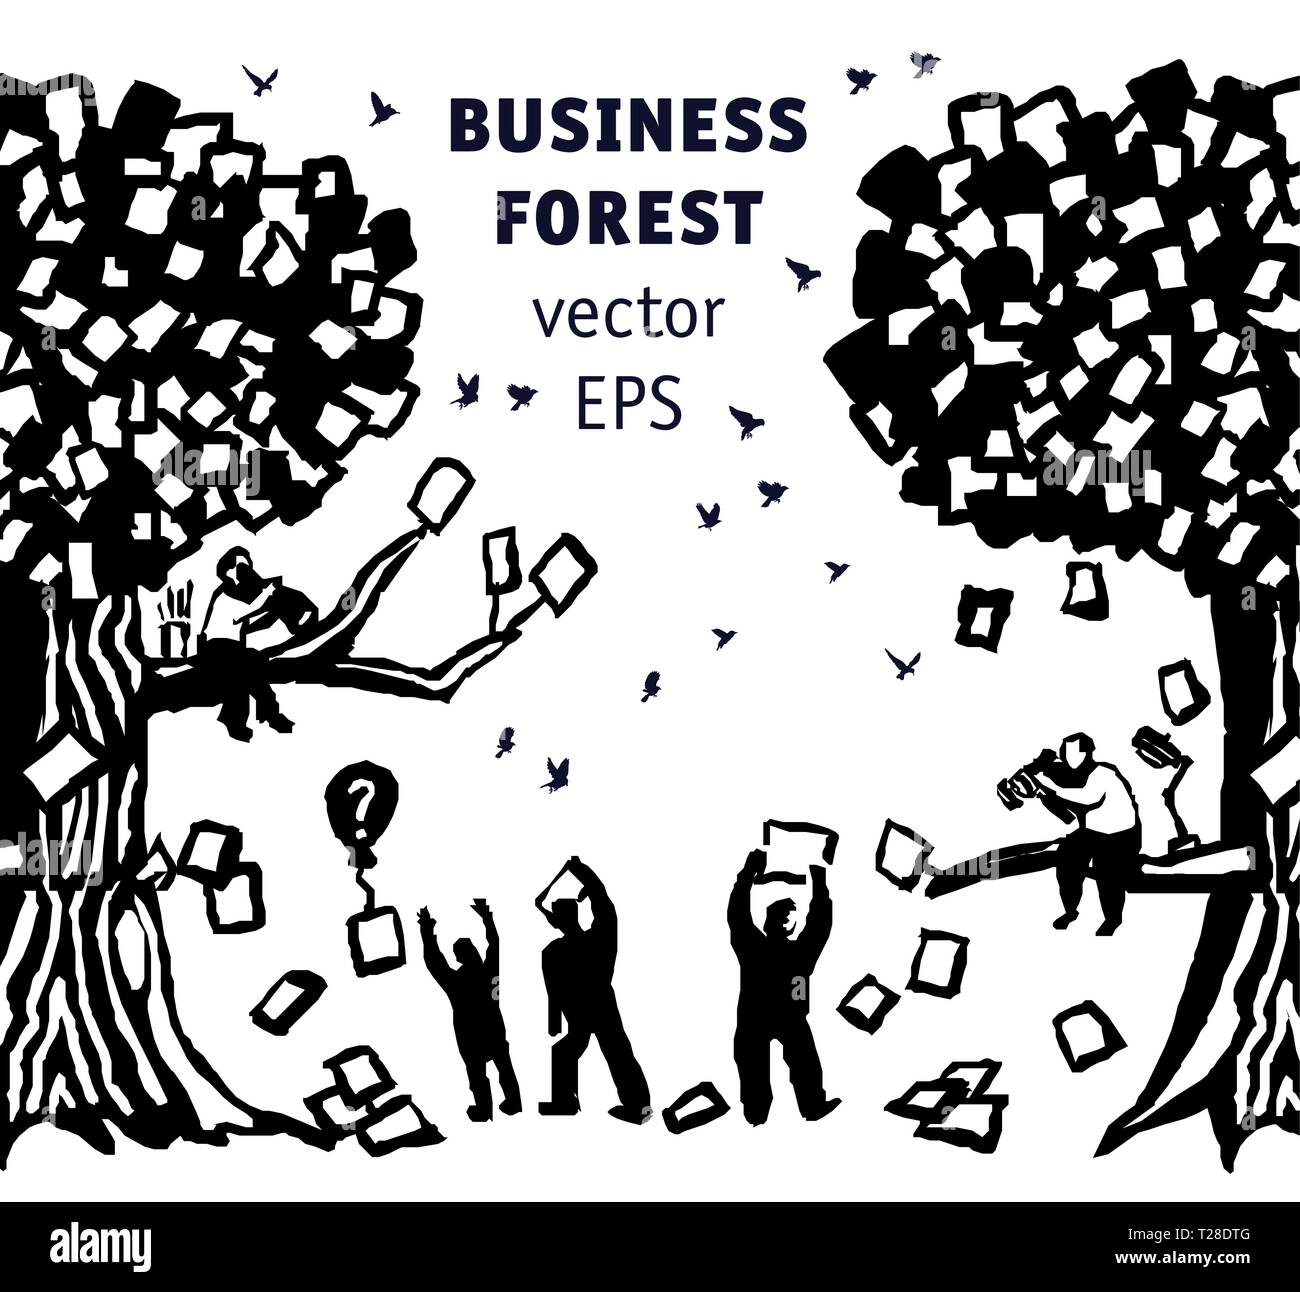 Abstract business popolo della foresta e dei documenti in bianco e nero silhouette Illustrazione Vettoriale